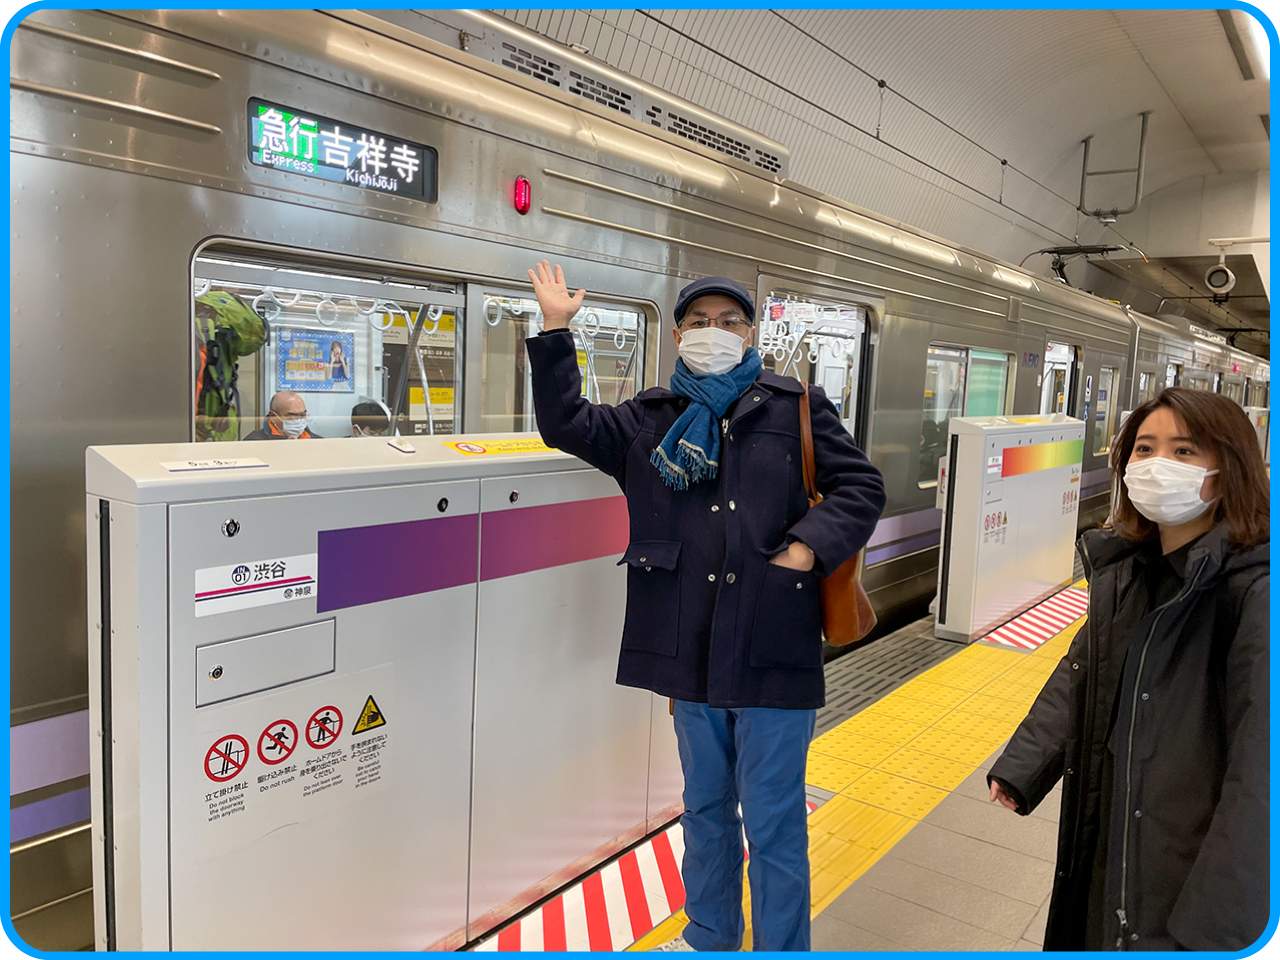 ▲まずは下北沢駅まで行きます。
「普通」でも行けますが、
「急行」に乗ったほうが早いです。